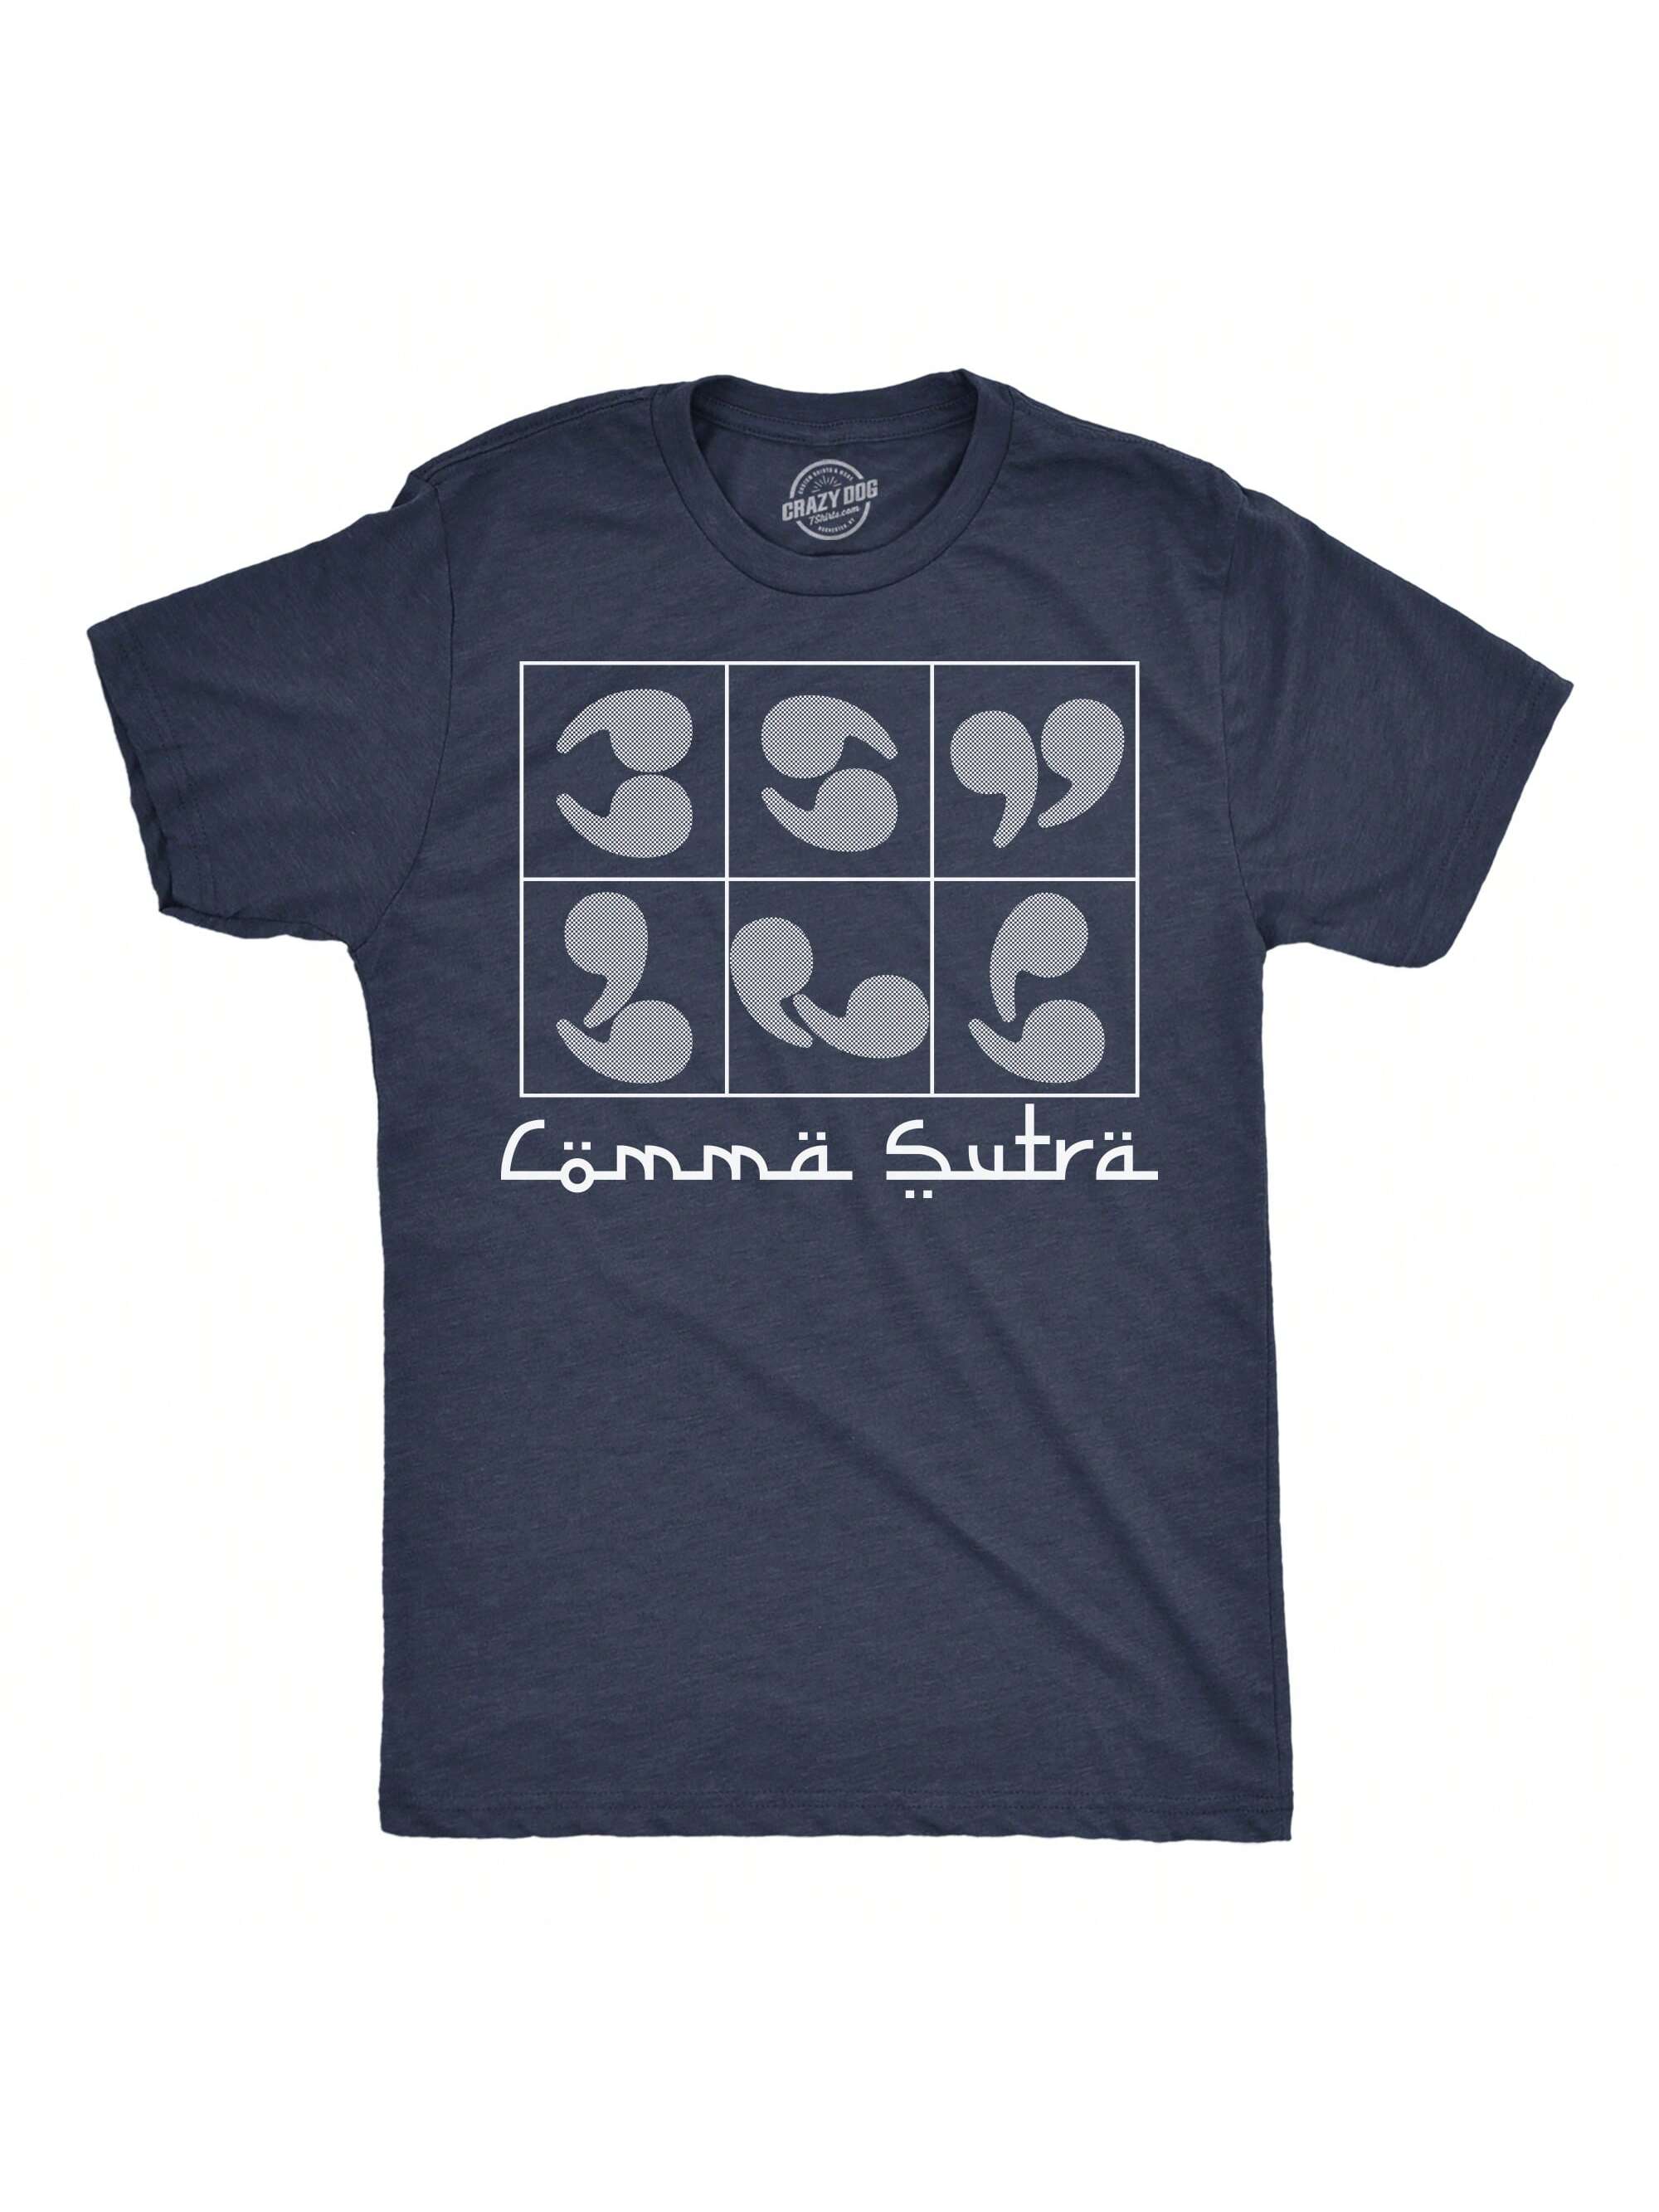 Мужские забавные футболки Comma Sutra саркастическая футболка с рисунком для мужчин (темно-синий Хизер - Comma Sutra) - L, хизер вмс - запятая сутра yan lianke heart sutra